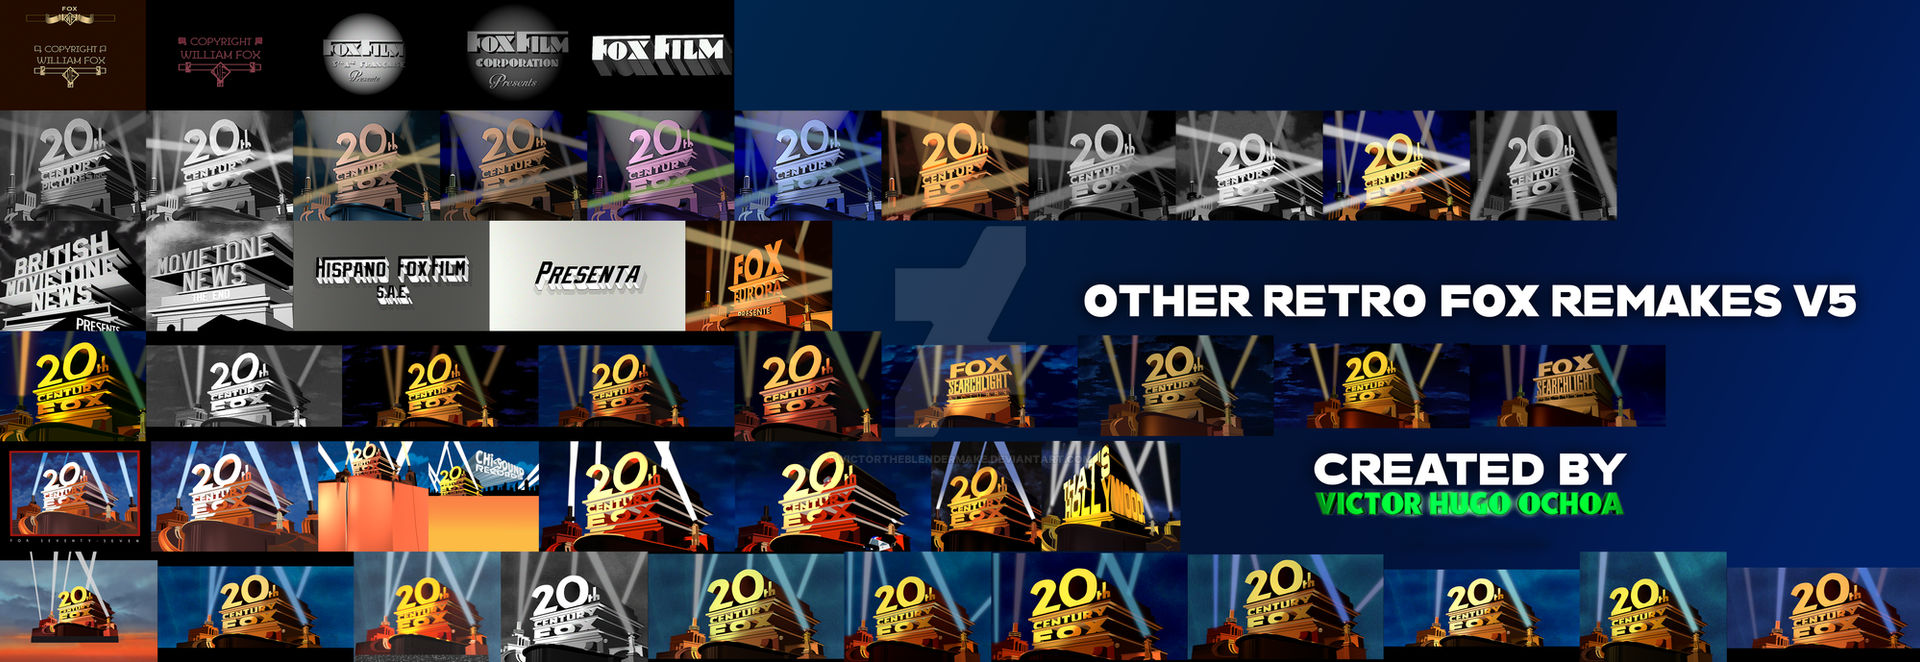 Retro Fox Logo Remakes Part 6 (Variations) by LogoManSeva on